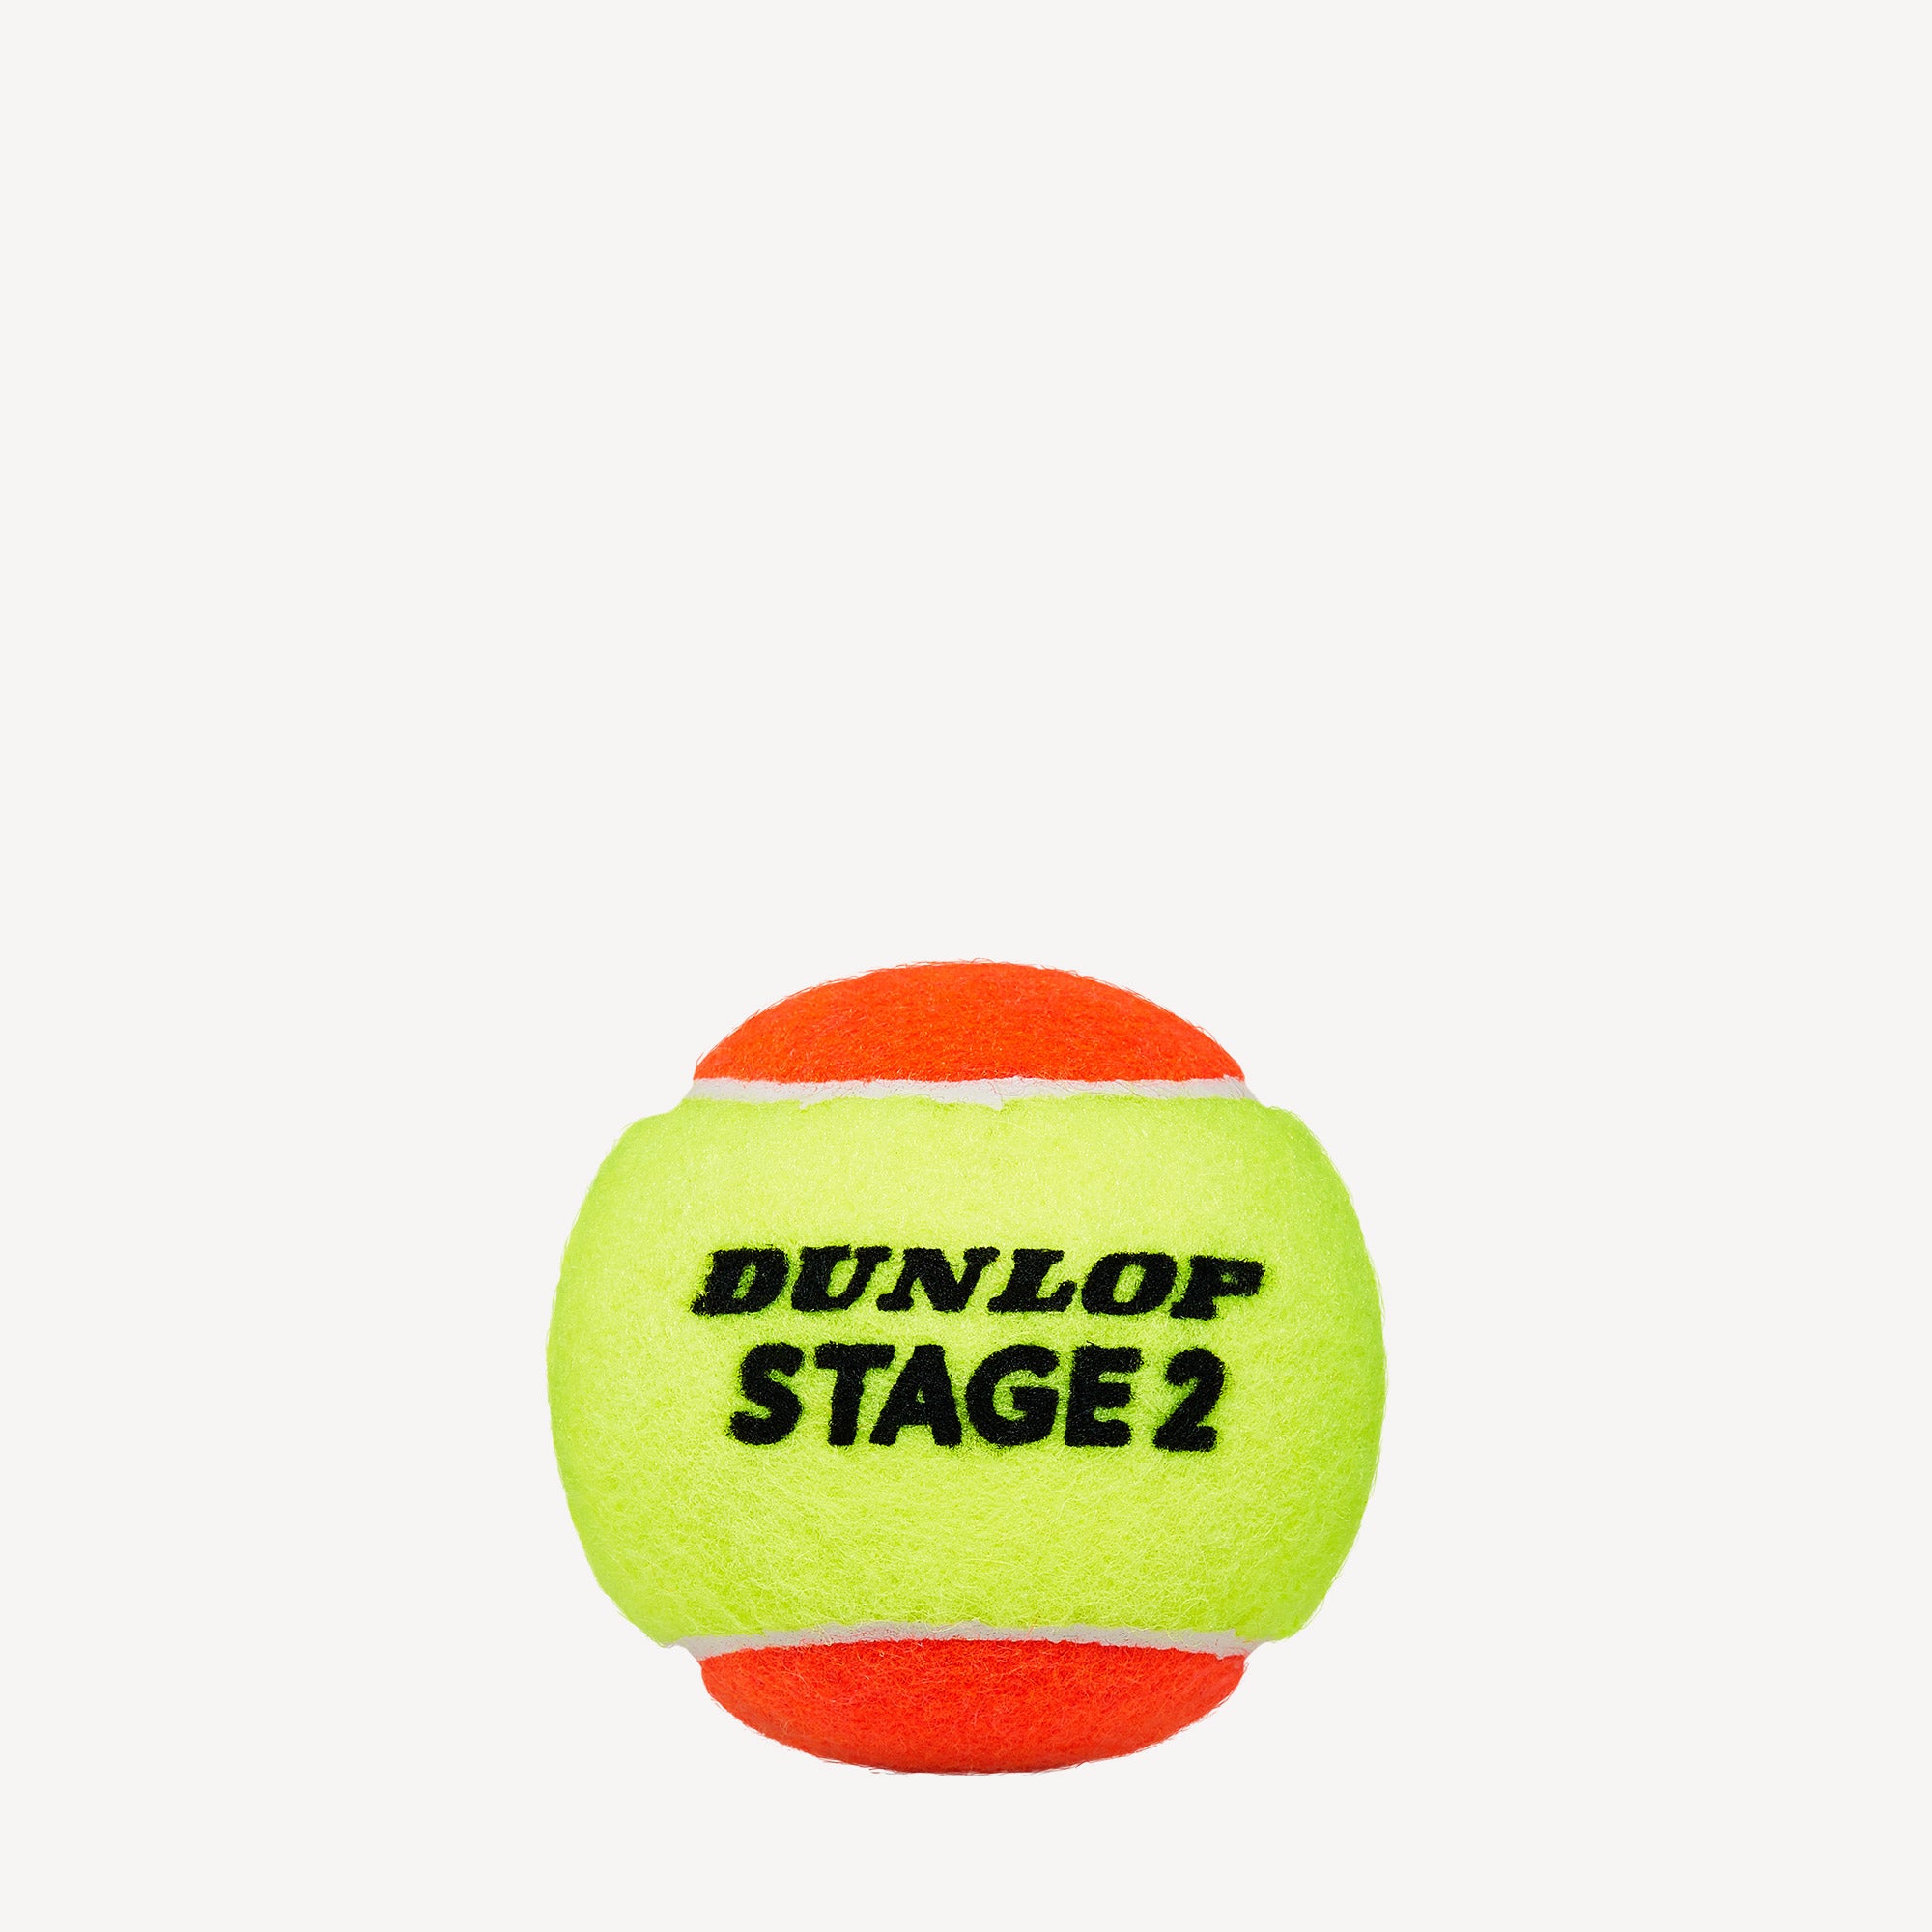 Dunlop Stage 2 Orange 60 Tennis Balls Bucket 2